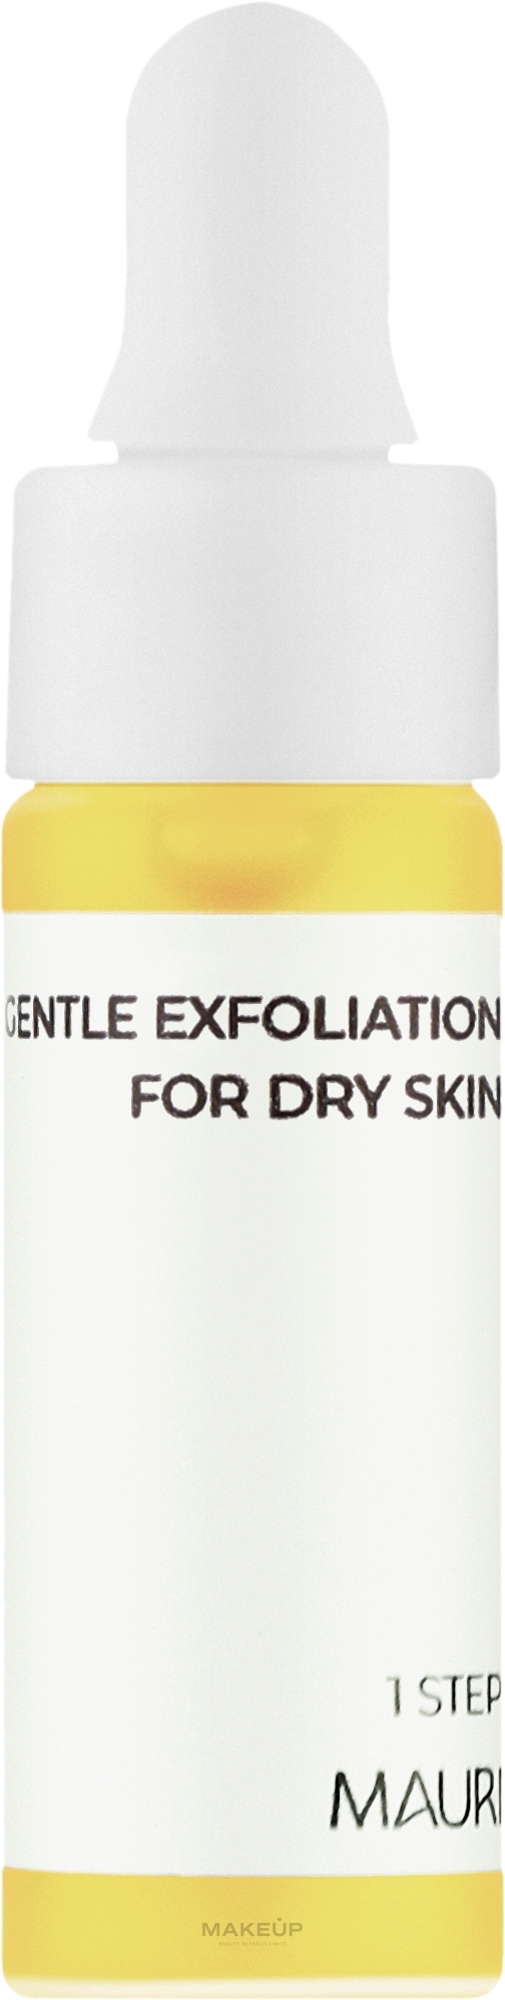 М'який пілінг для сухої шкіри обличчя - Mauri Gentle Exfoliation For Dry Skin (міні) — фото 5ml